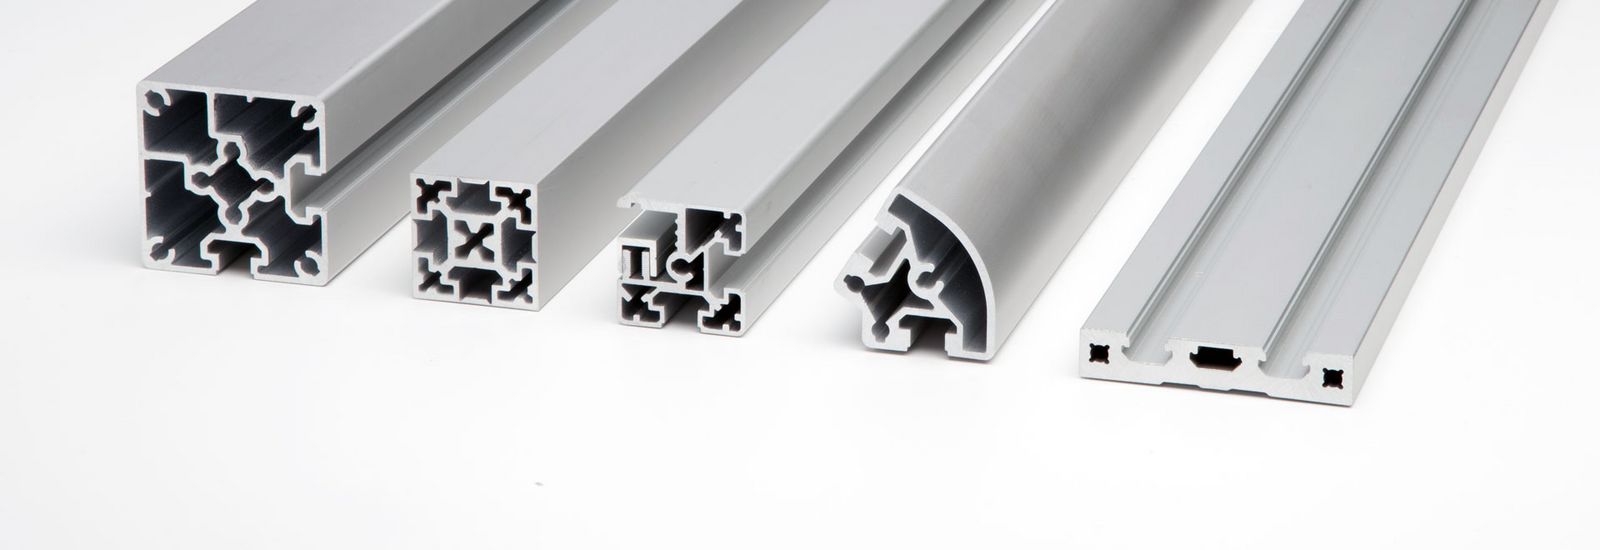 Functional and special aluminium profiles